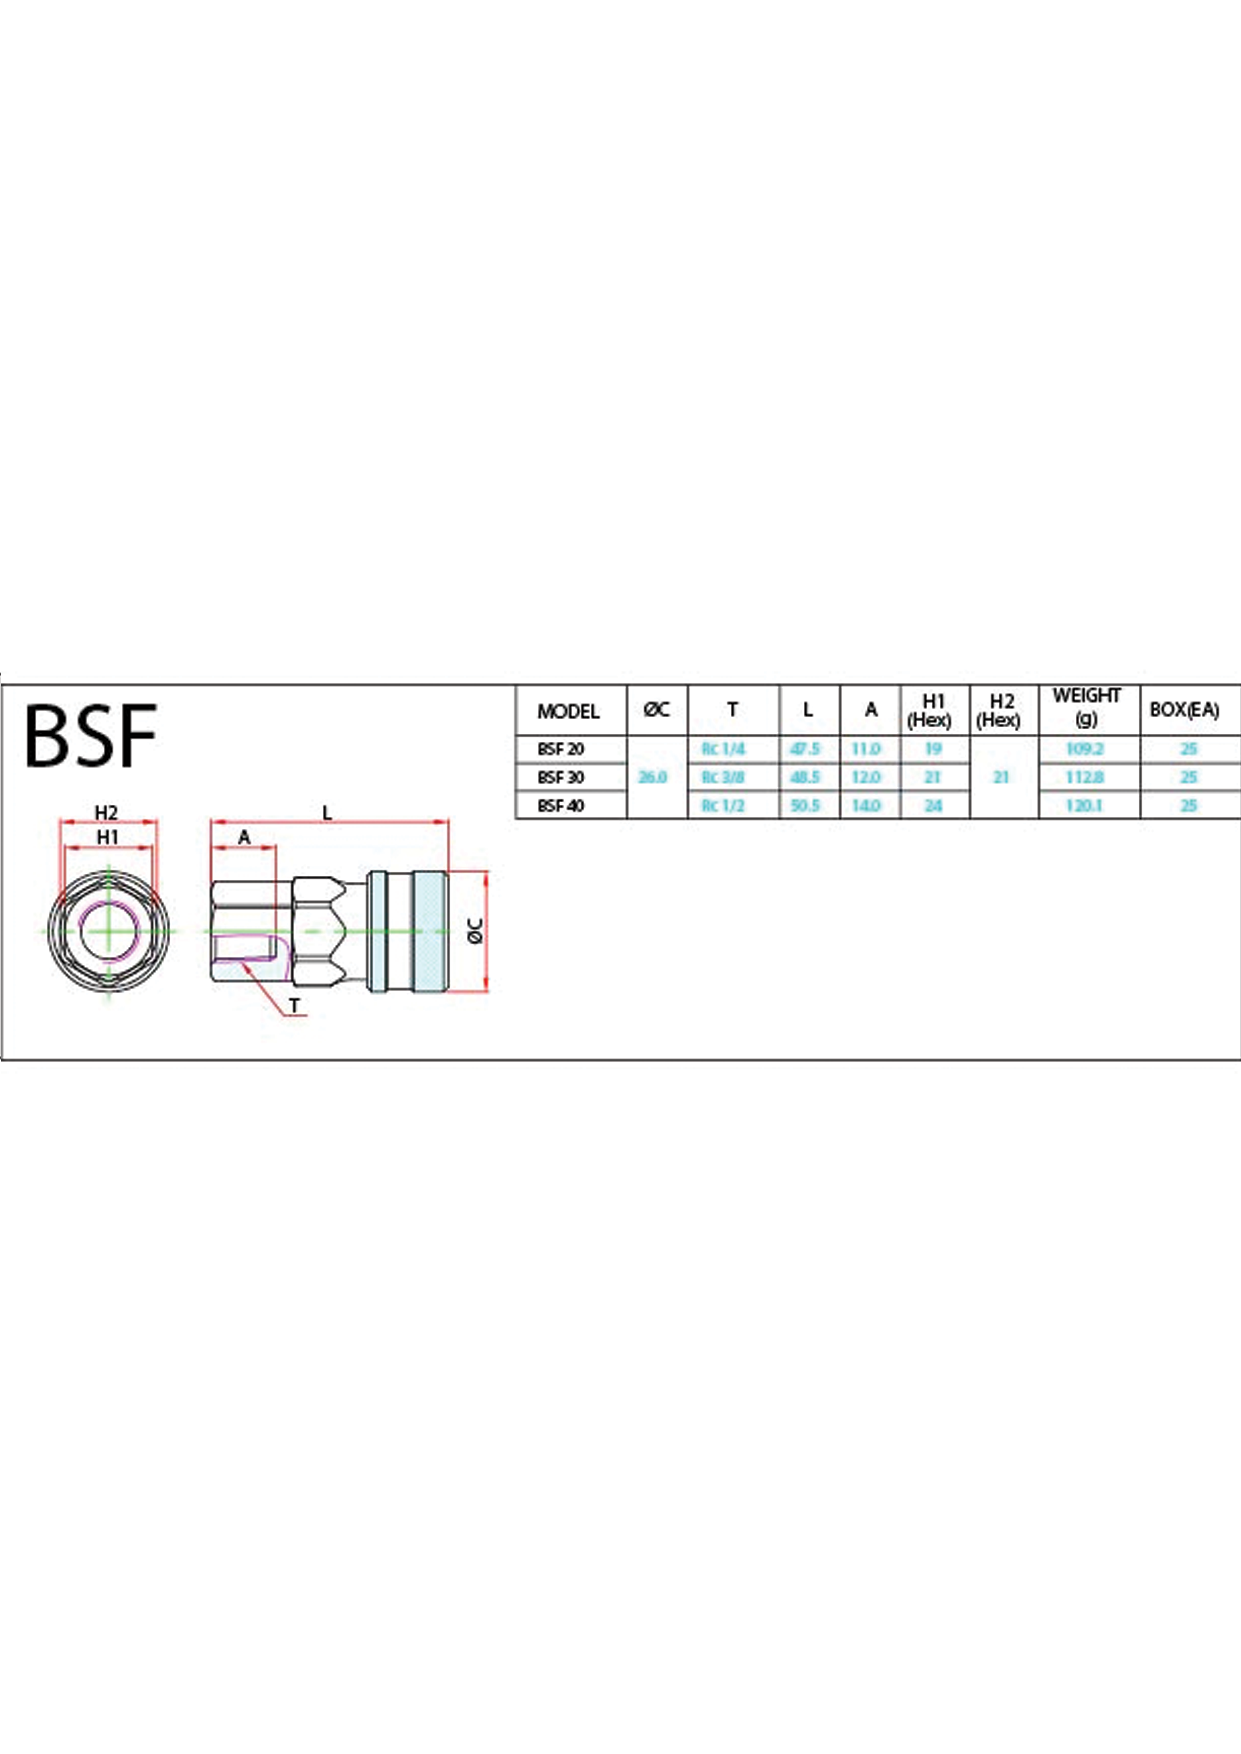 BSF Data Sheet